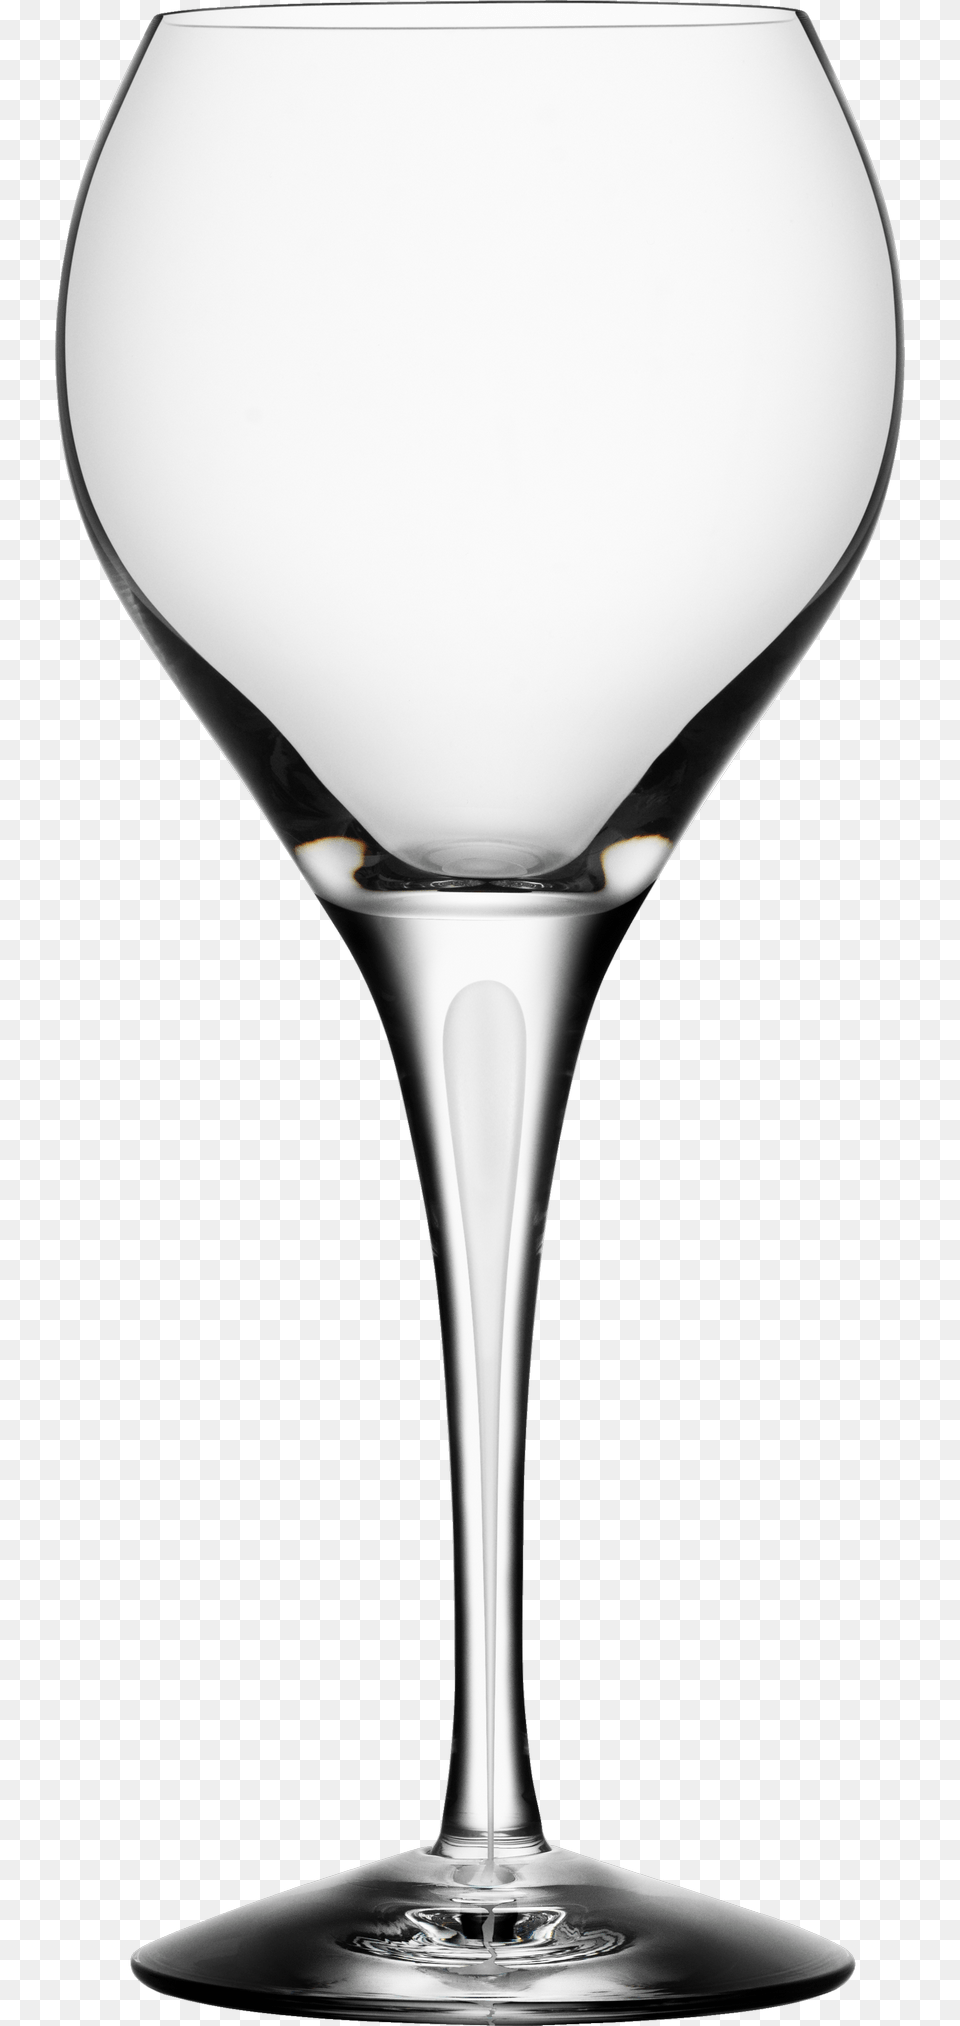 Wine Glass Alcohol, Beverage, Goblet, Liquor Png Image